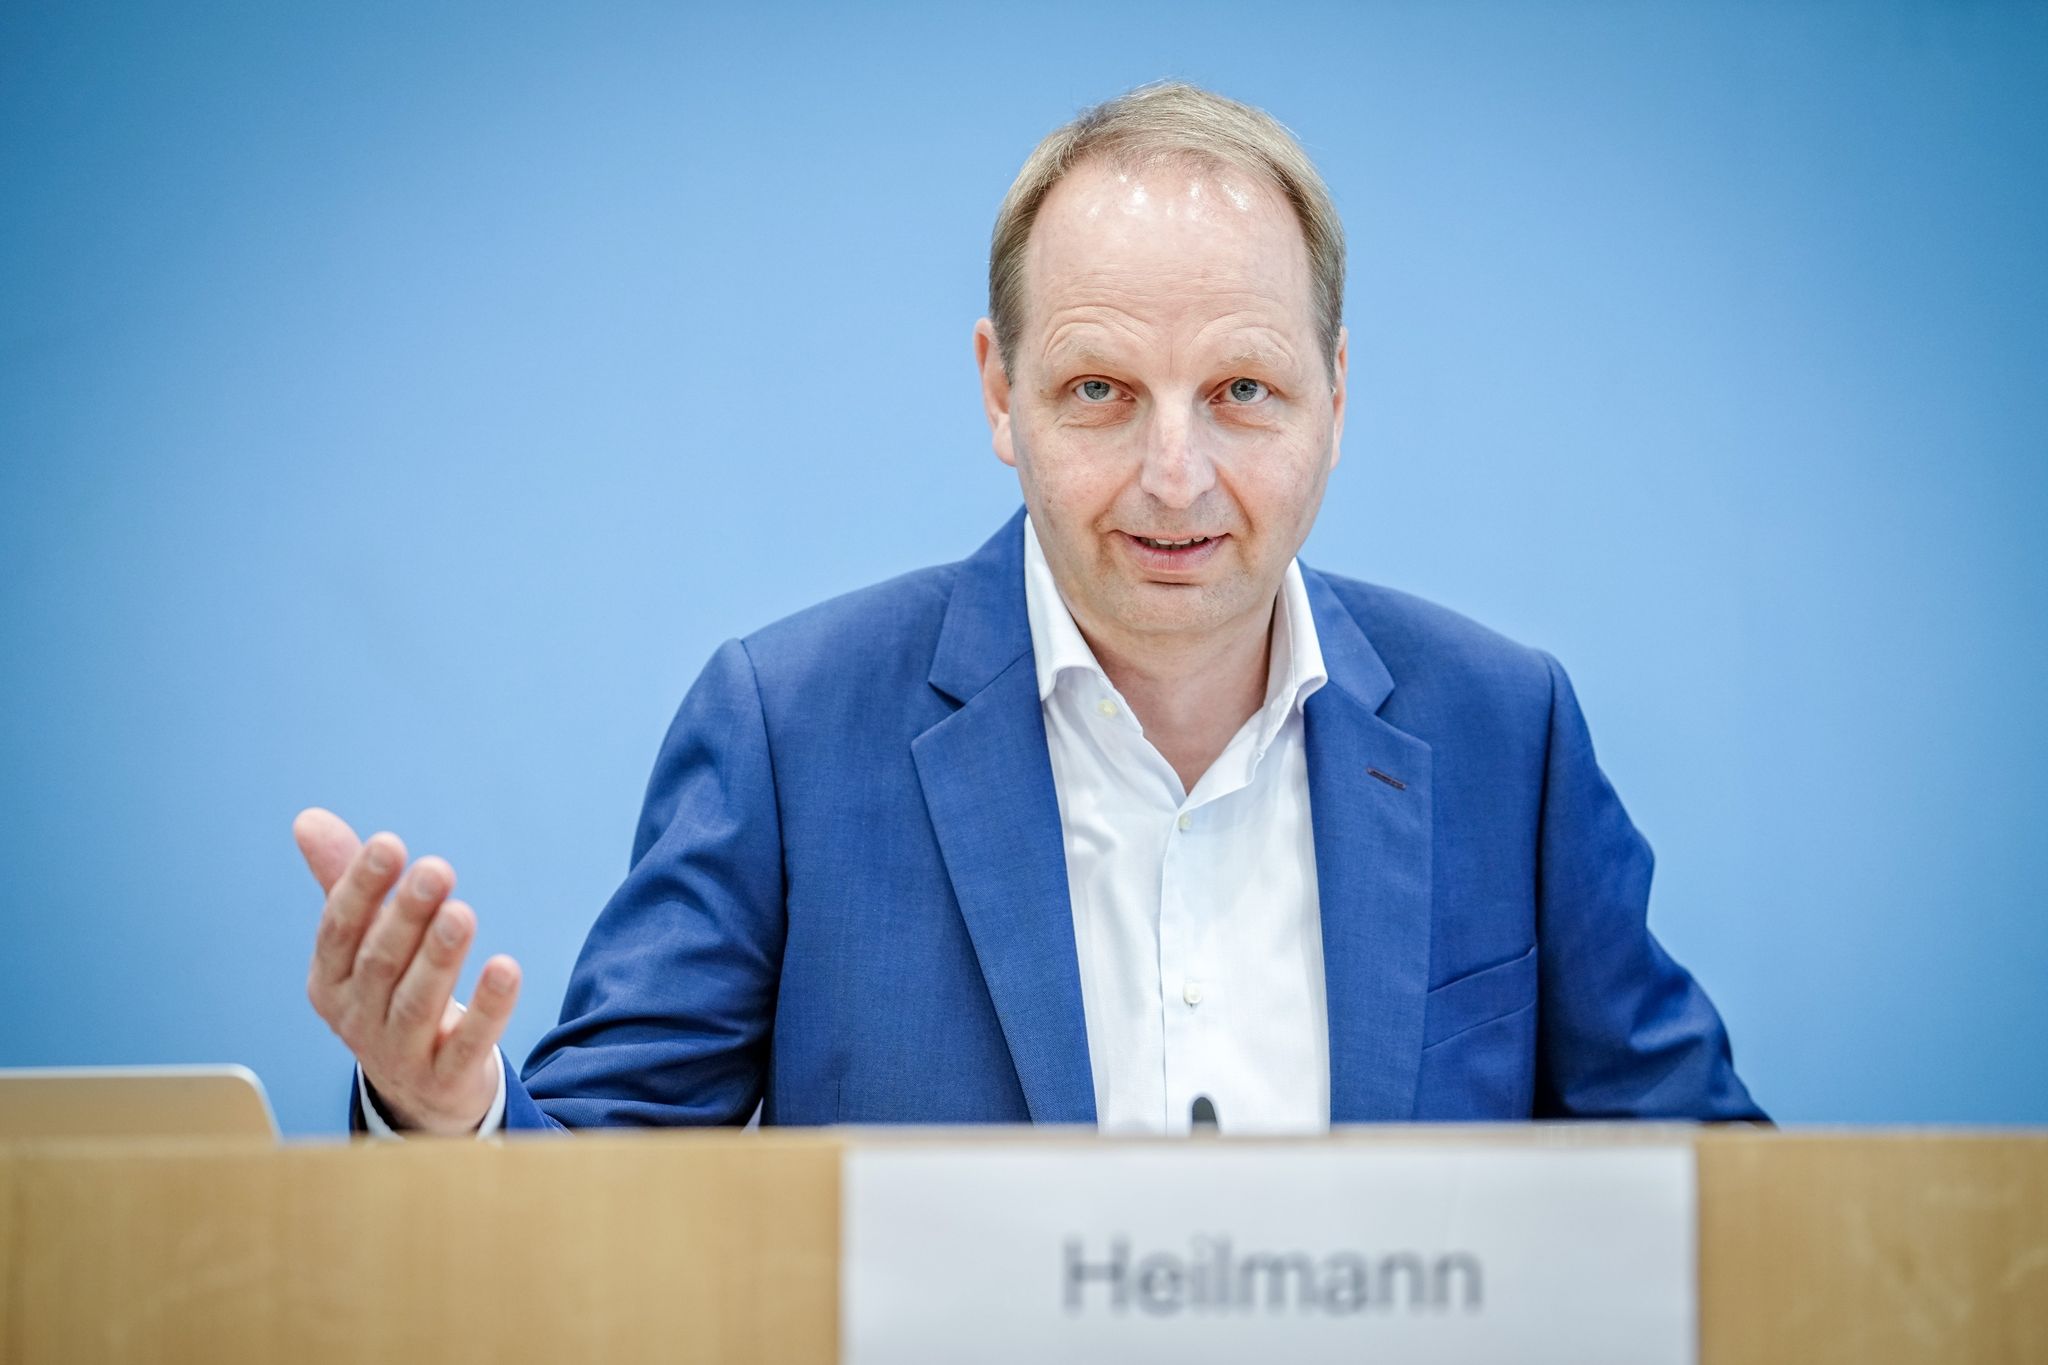 «Eine grundsätzliche Überarbeitung der Heizungspläne wäre richtig», sagt der CDU-Bundestagsabgeordneter Thomas Heilmann.